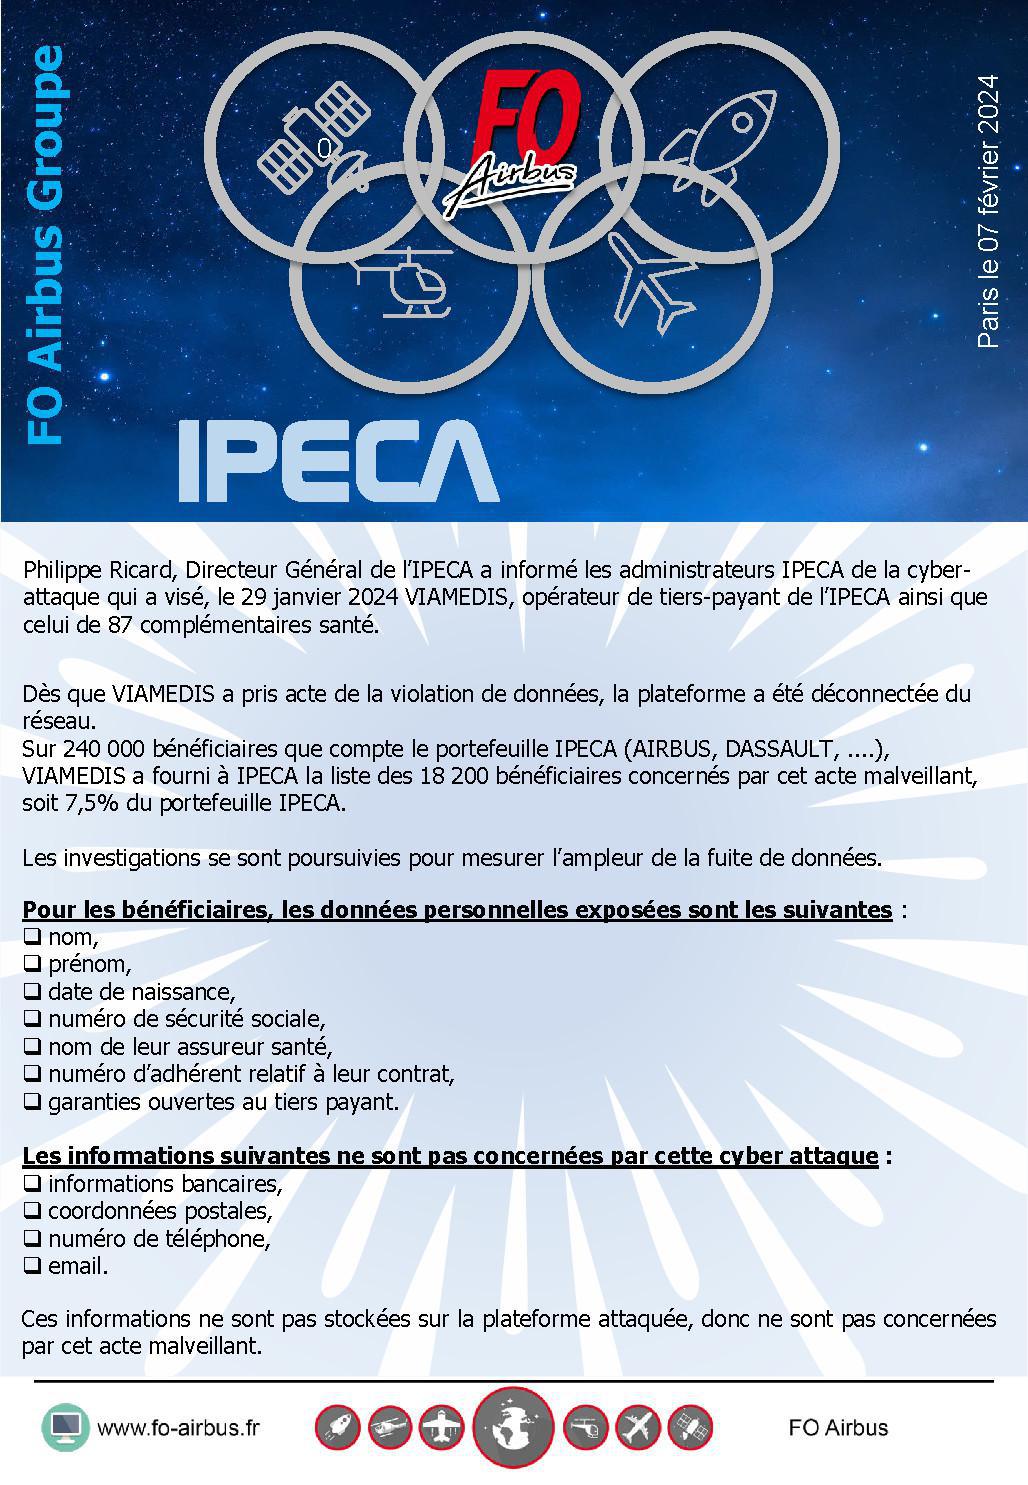 IPECA : Cyberattaque sur Viamedis